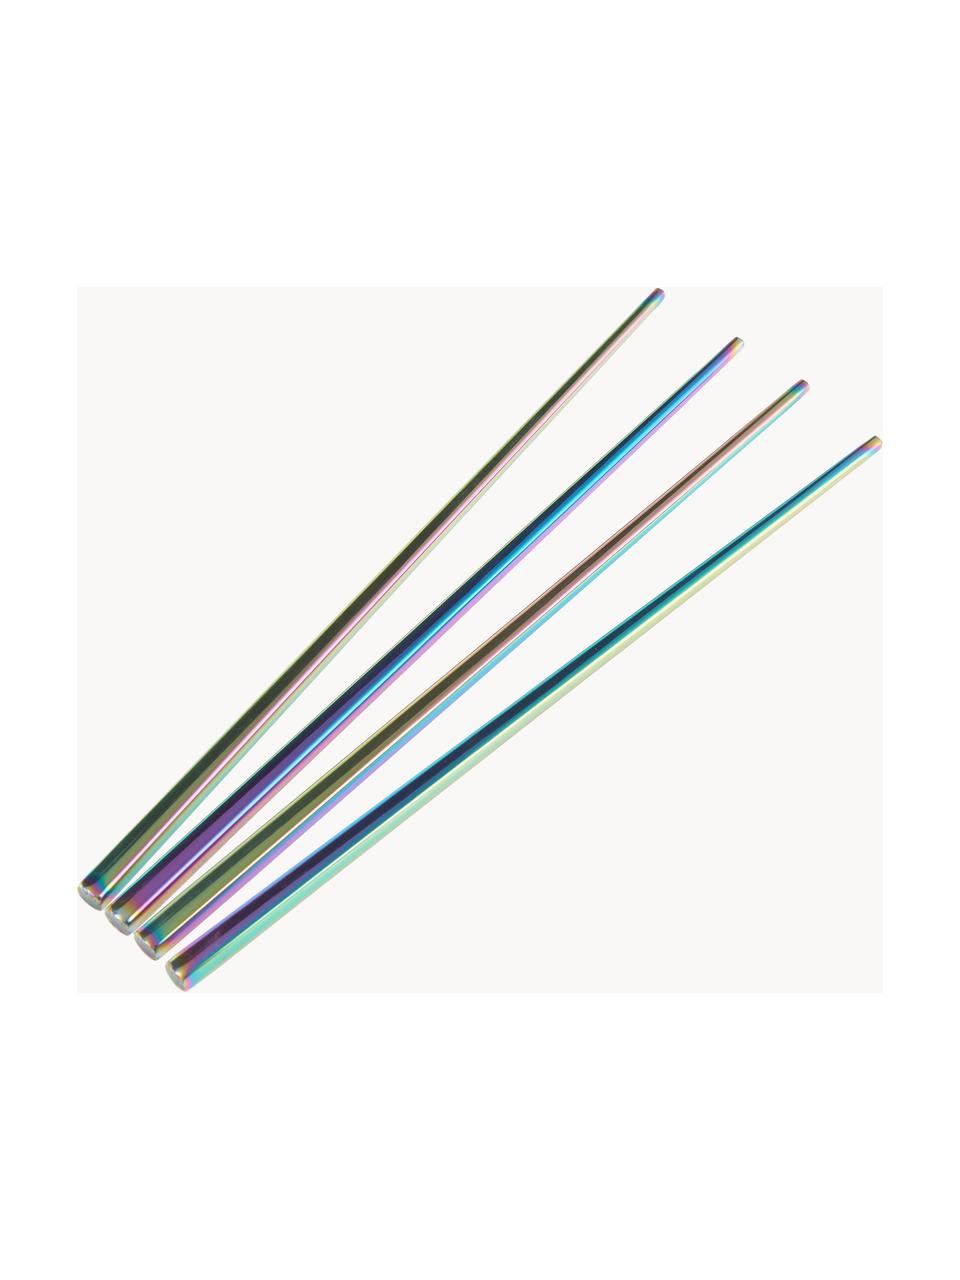 Jídelní hůlky Shine, 2 páry, Nerezová ocel

Příbory jsou vyrobeny z nerezové oceli. Jsou pevné, nerezaví a jsou odolné vůči bakteriím., Opalizující, D 23 cm